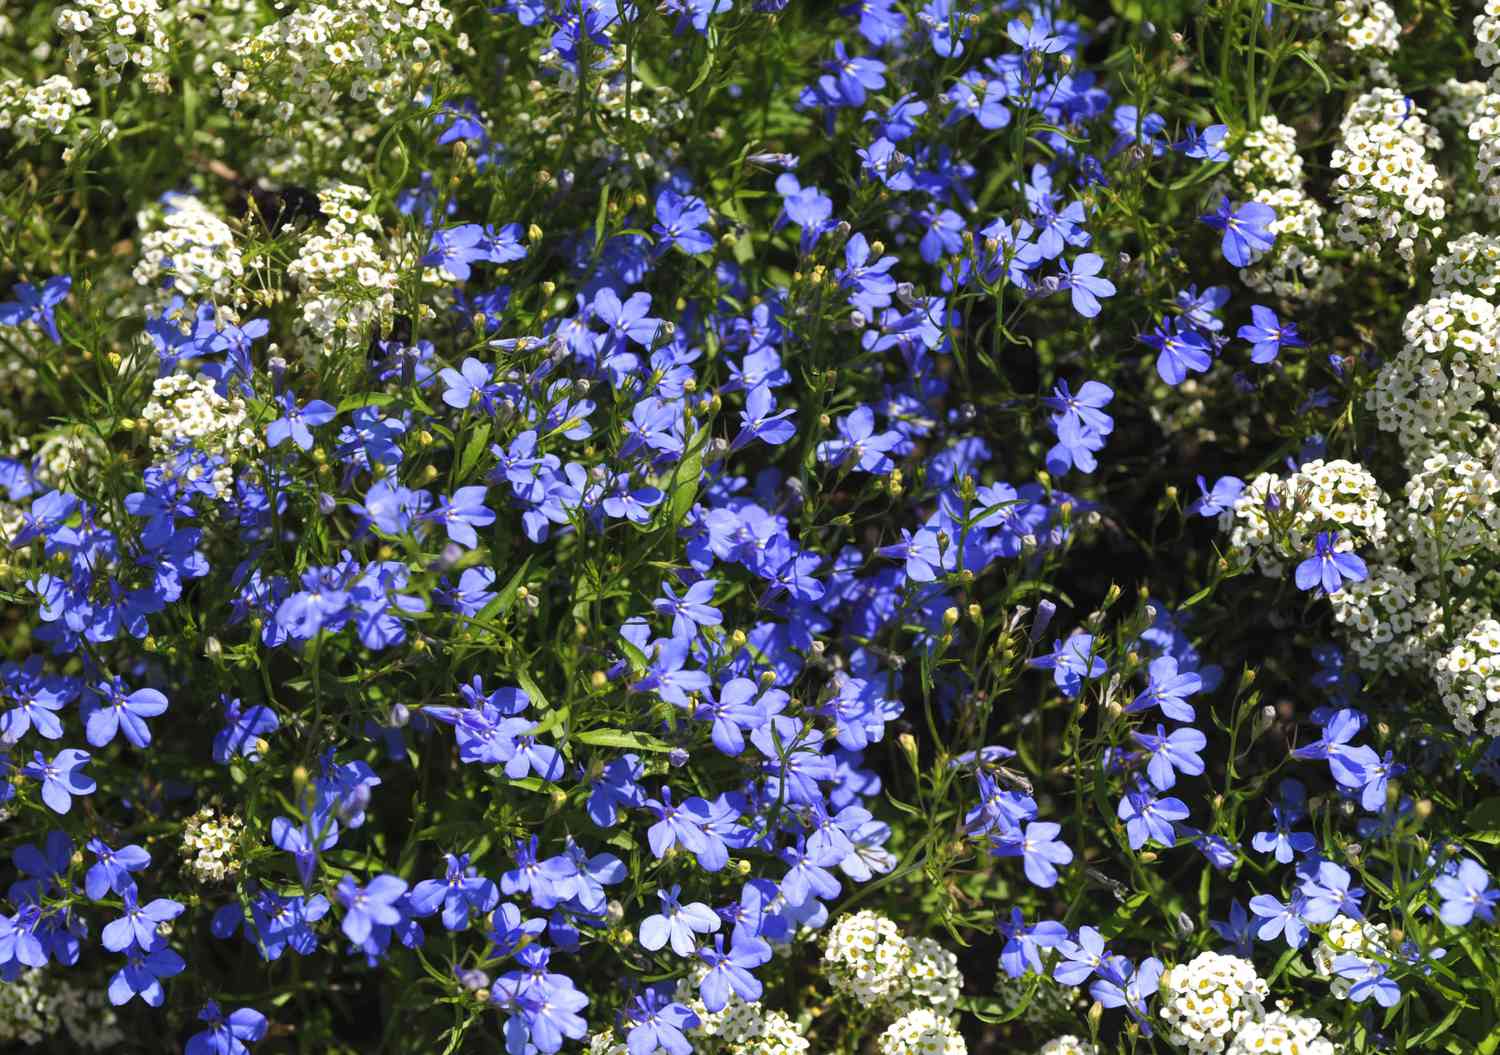 Schleppende Lobelienpflanze mit kleinen violetten Blüten zwischen den Blättern und kleinen weißen Blütenbüscheln